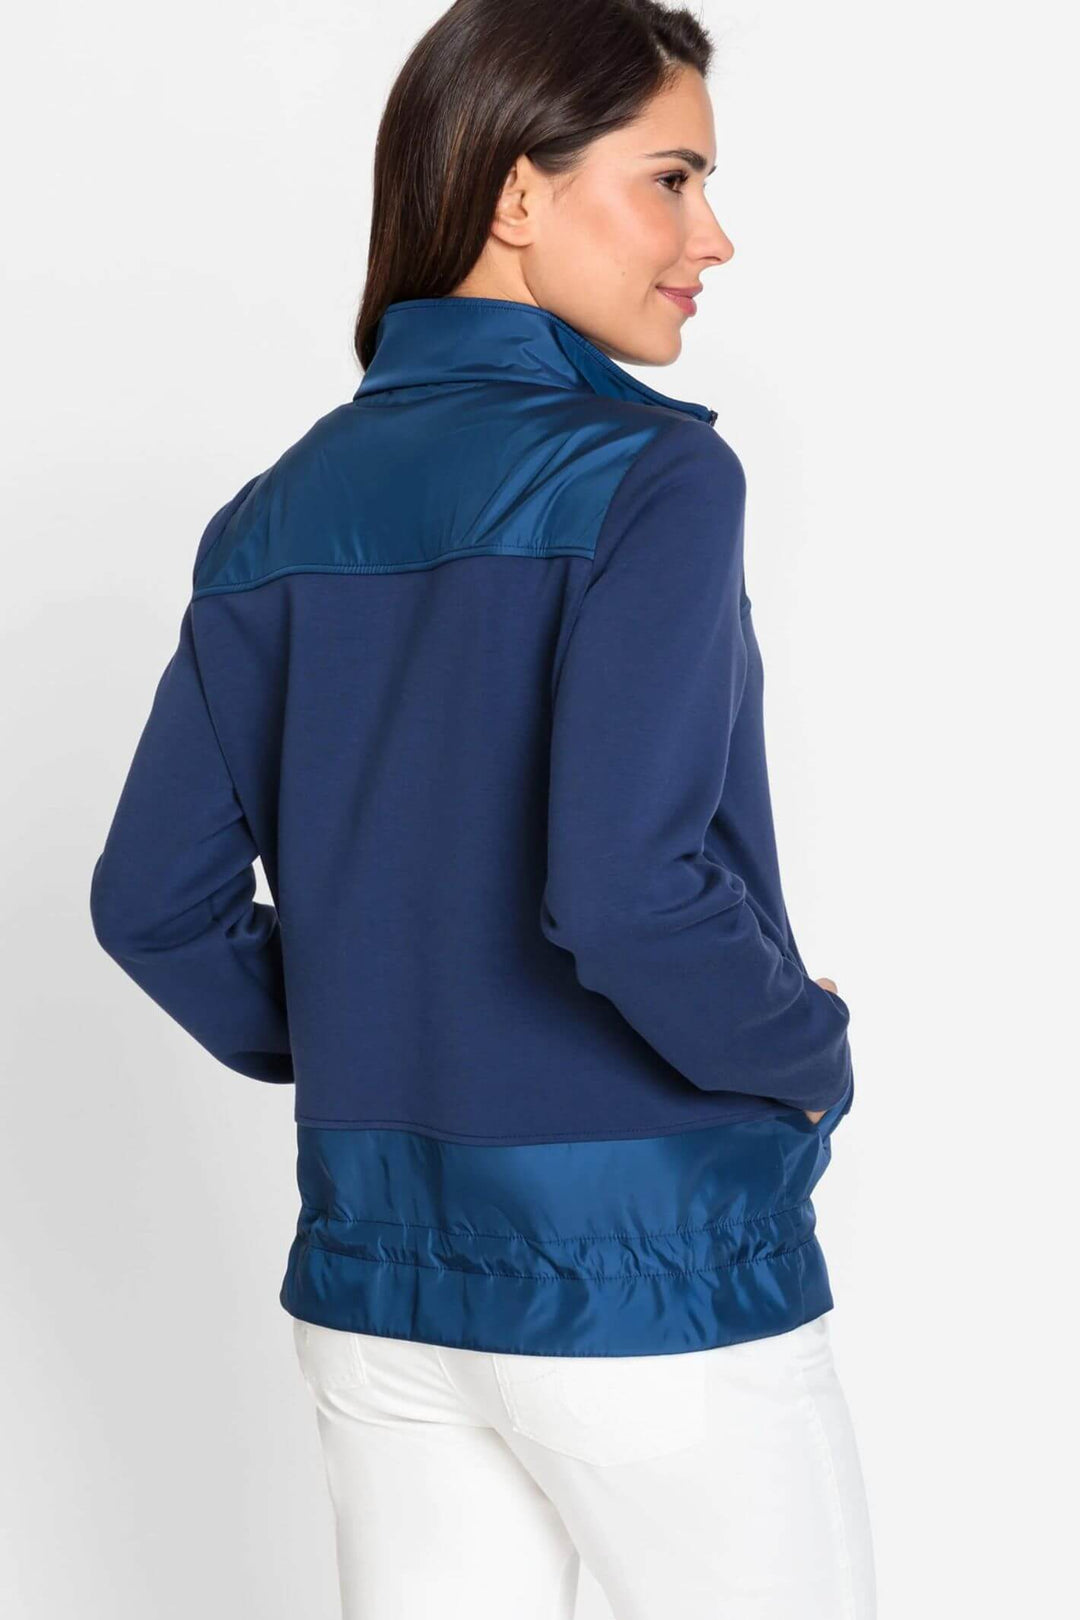 Olsen 11201569 Navy Sports Luxe Zip Jacket